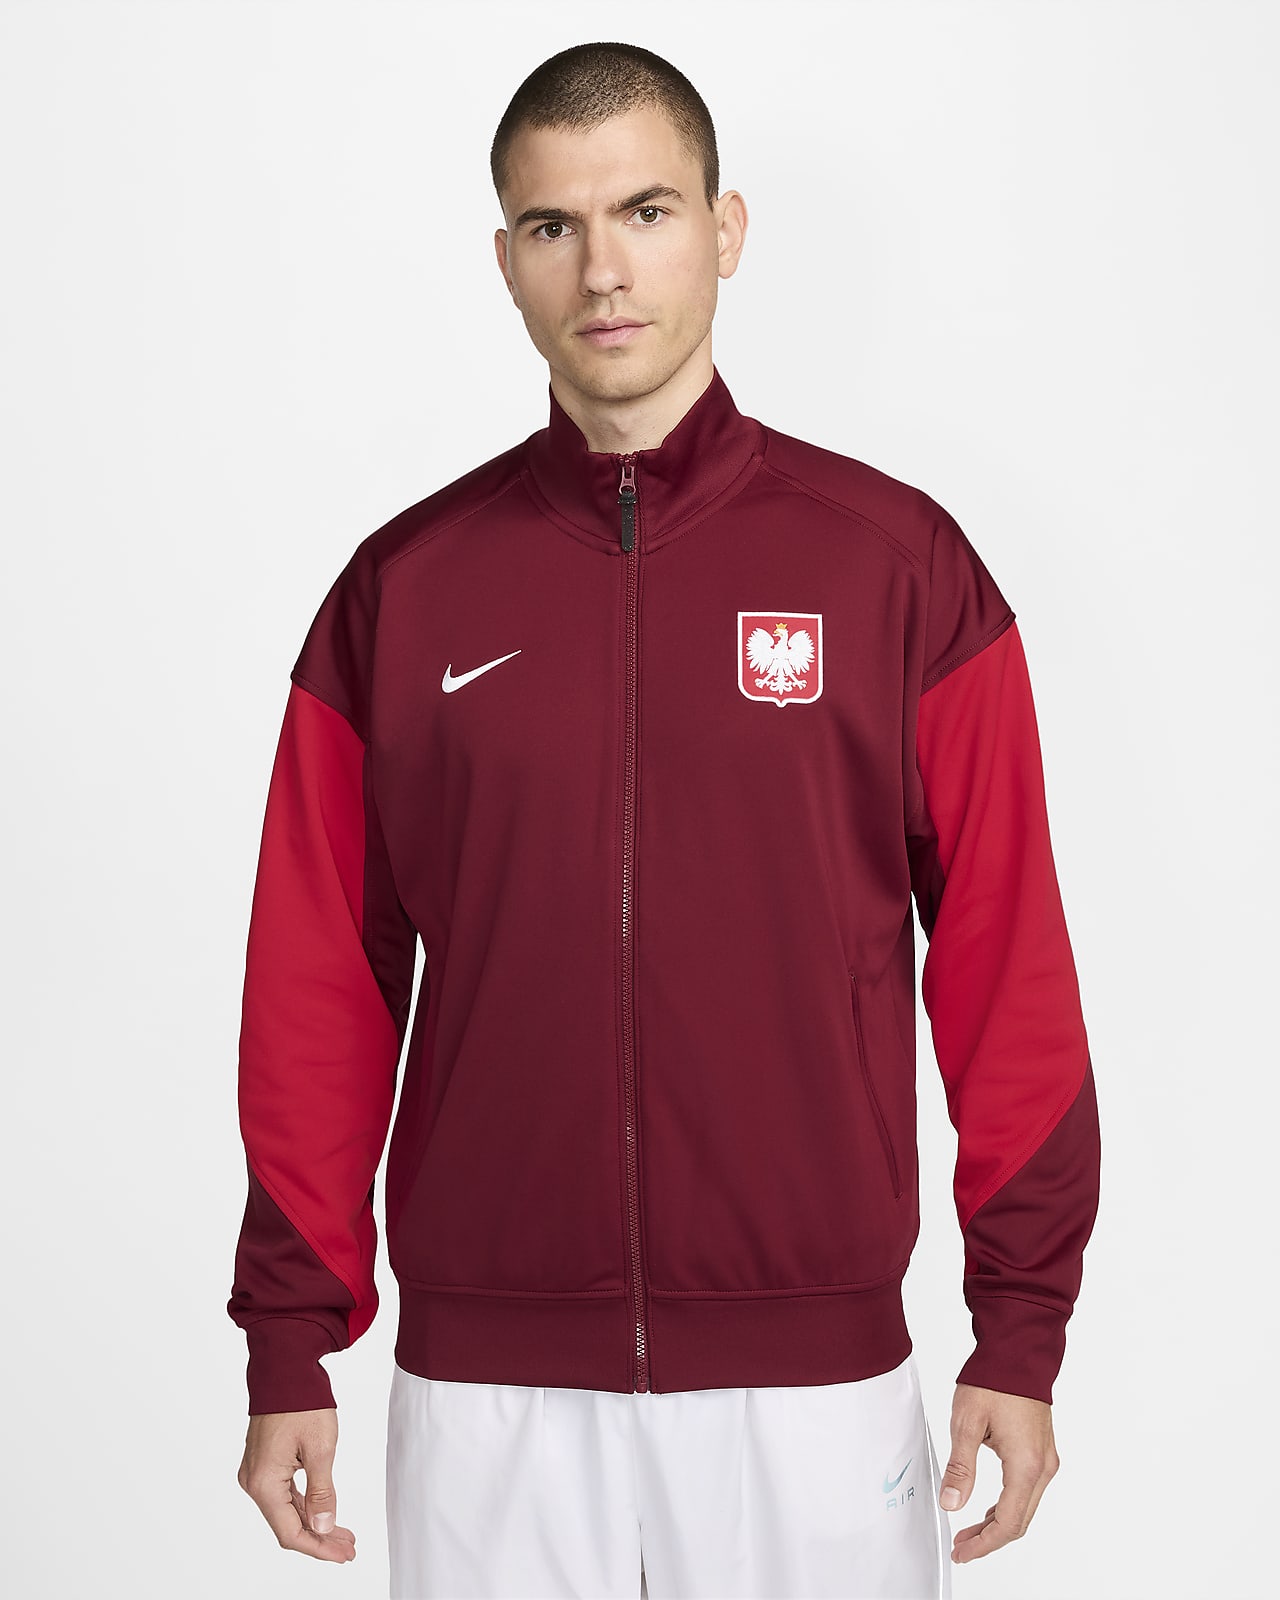 Pánská fotbalová bunda Nike Polsko Academy Pro